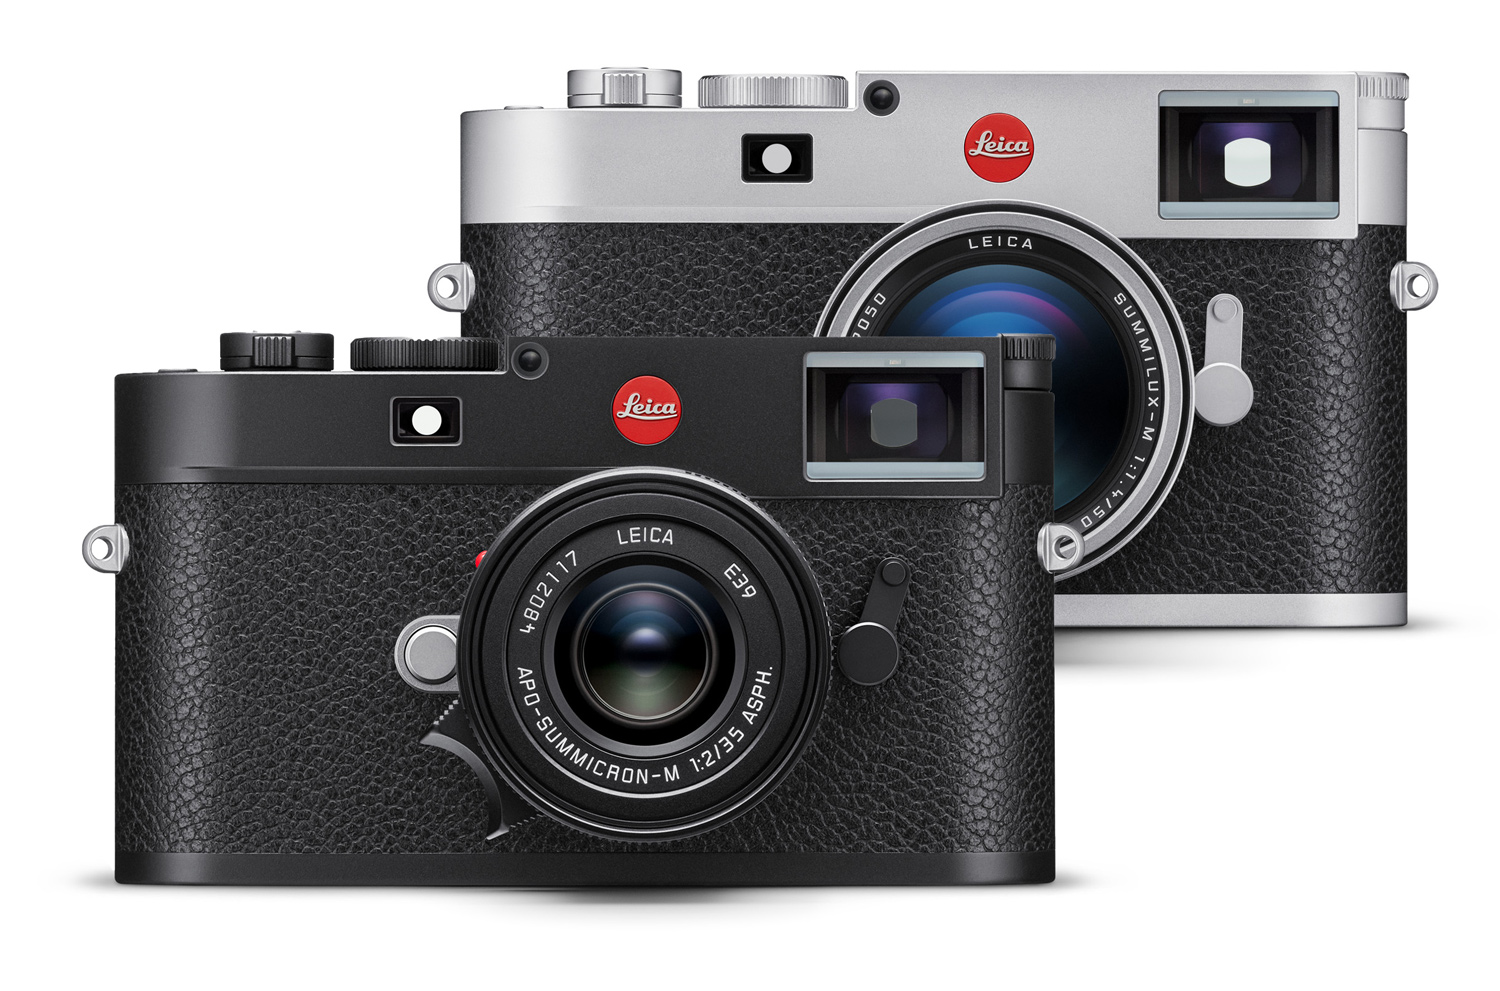 Die Leica M11 gibt es wie gehabt in einer rein schwarzen Ausführung sowie mit silberner Oberschale. Neu ist, dass das schwarze Modell rund 100 Gramm weniger wiegt